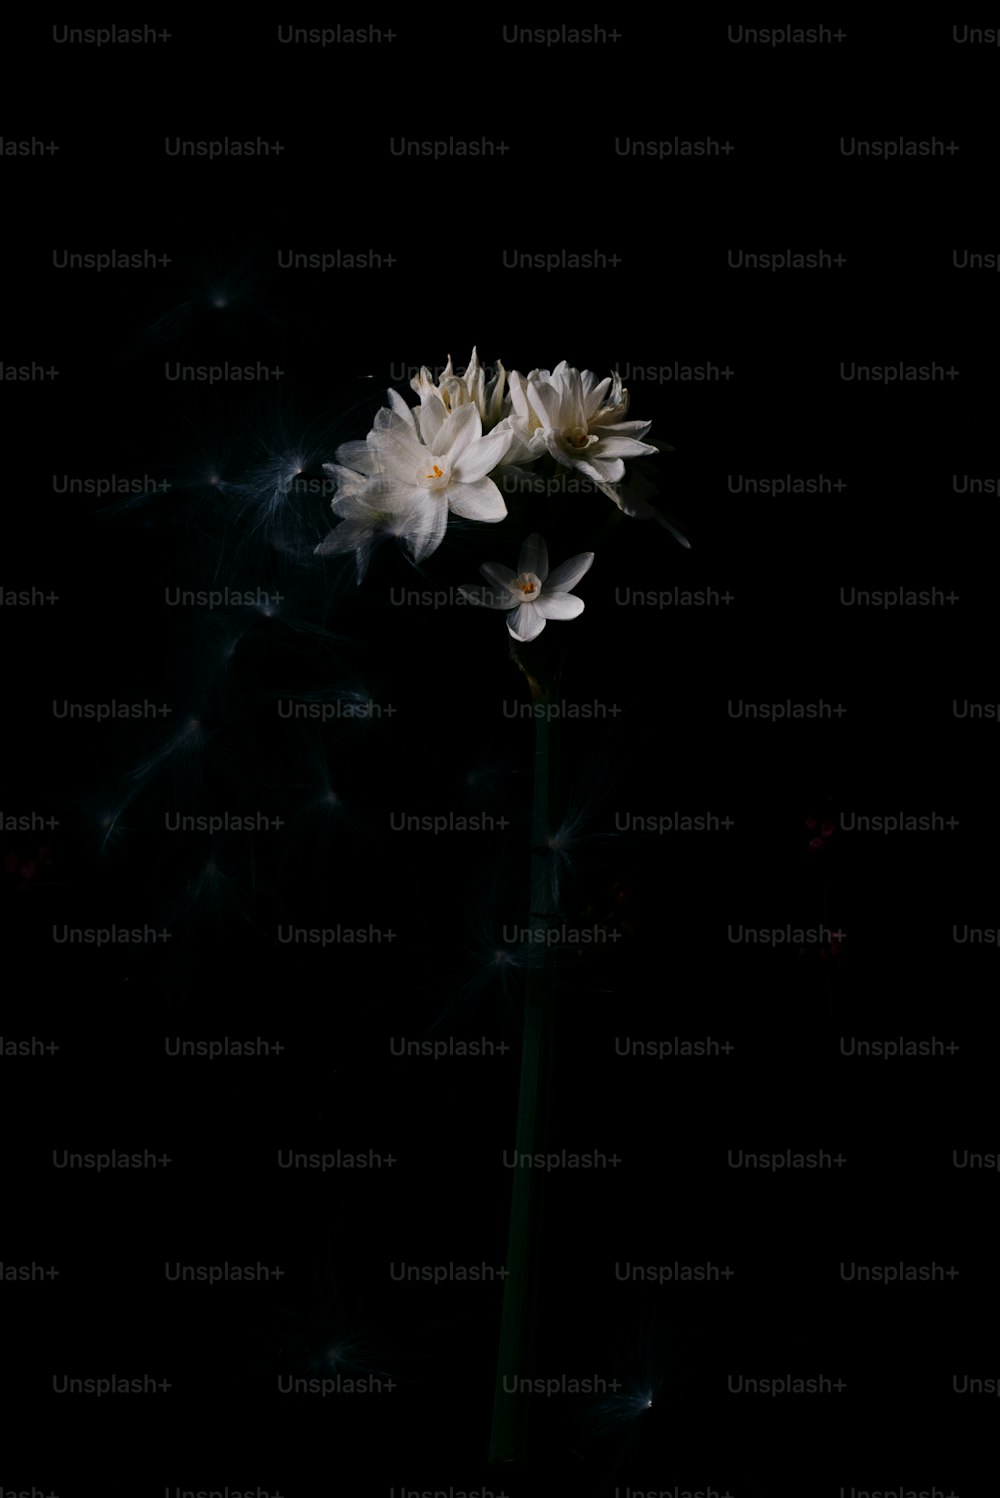 Eine einzelne weiße Blume in einem dunklen Raum